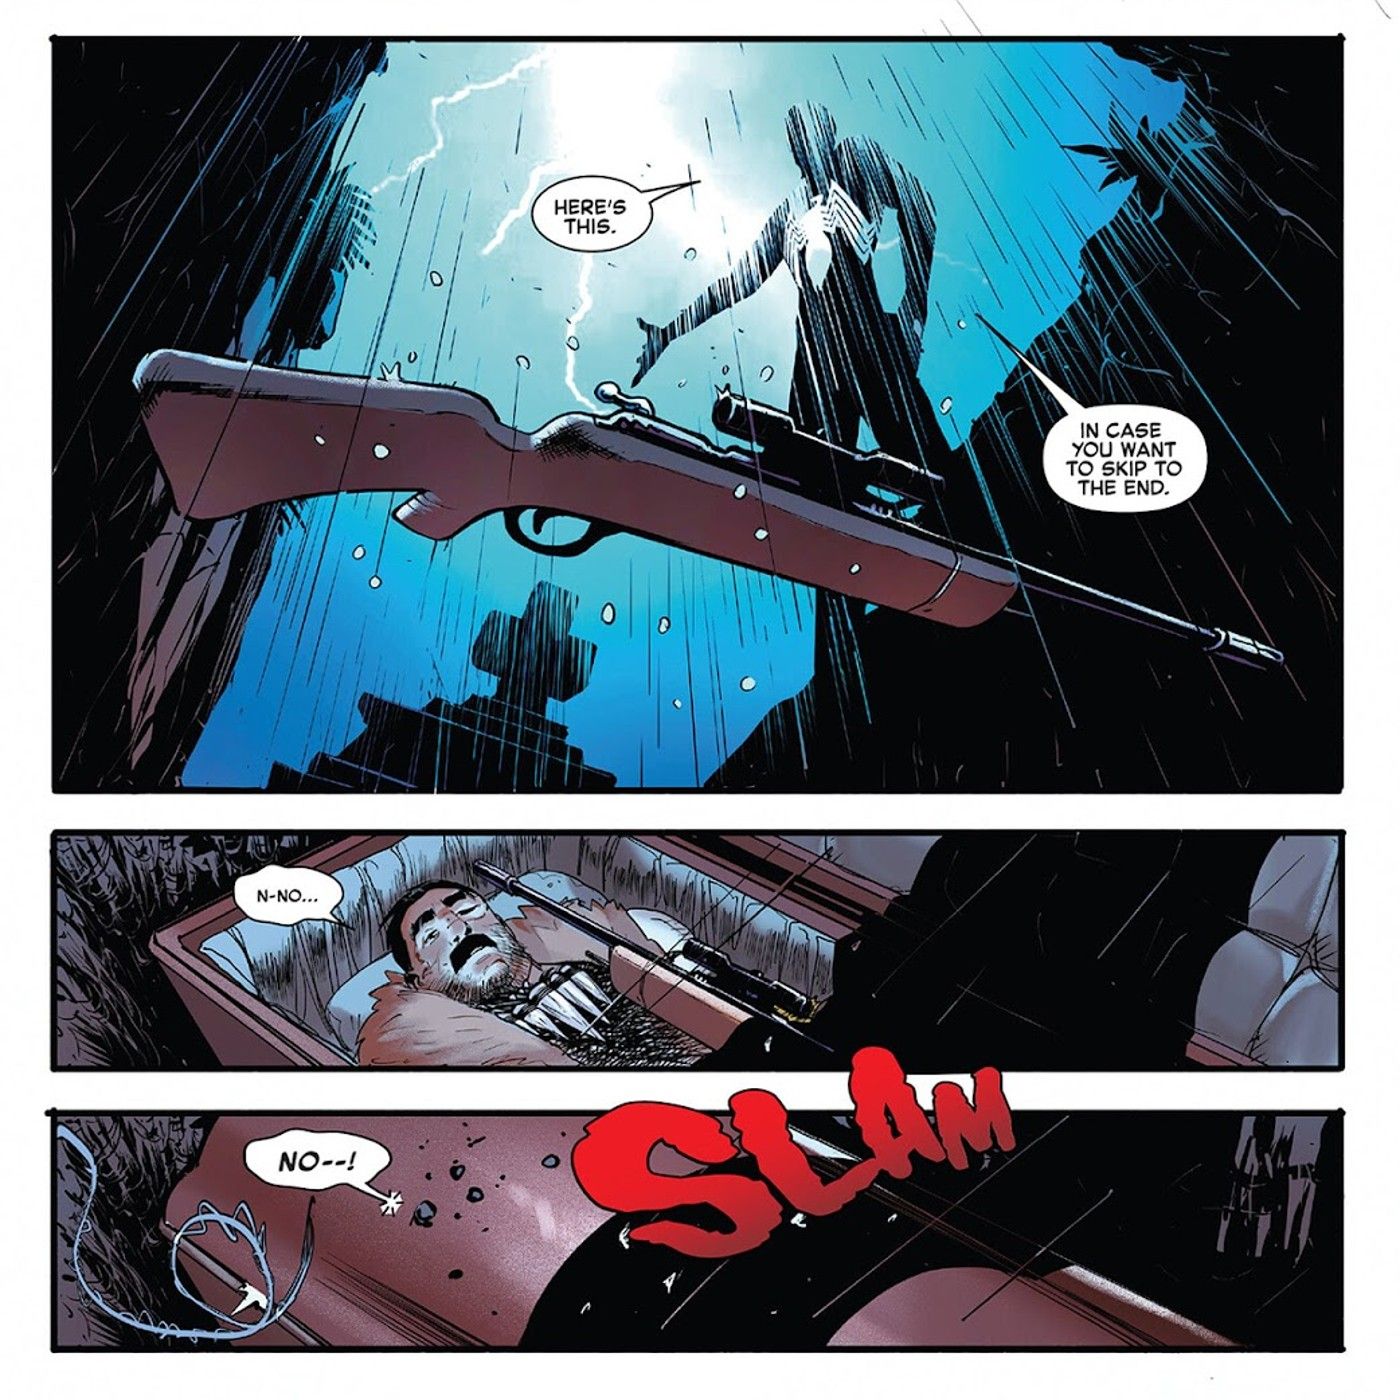 Spider-Man buries Kraven the Hunter alive